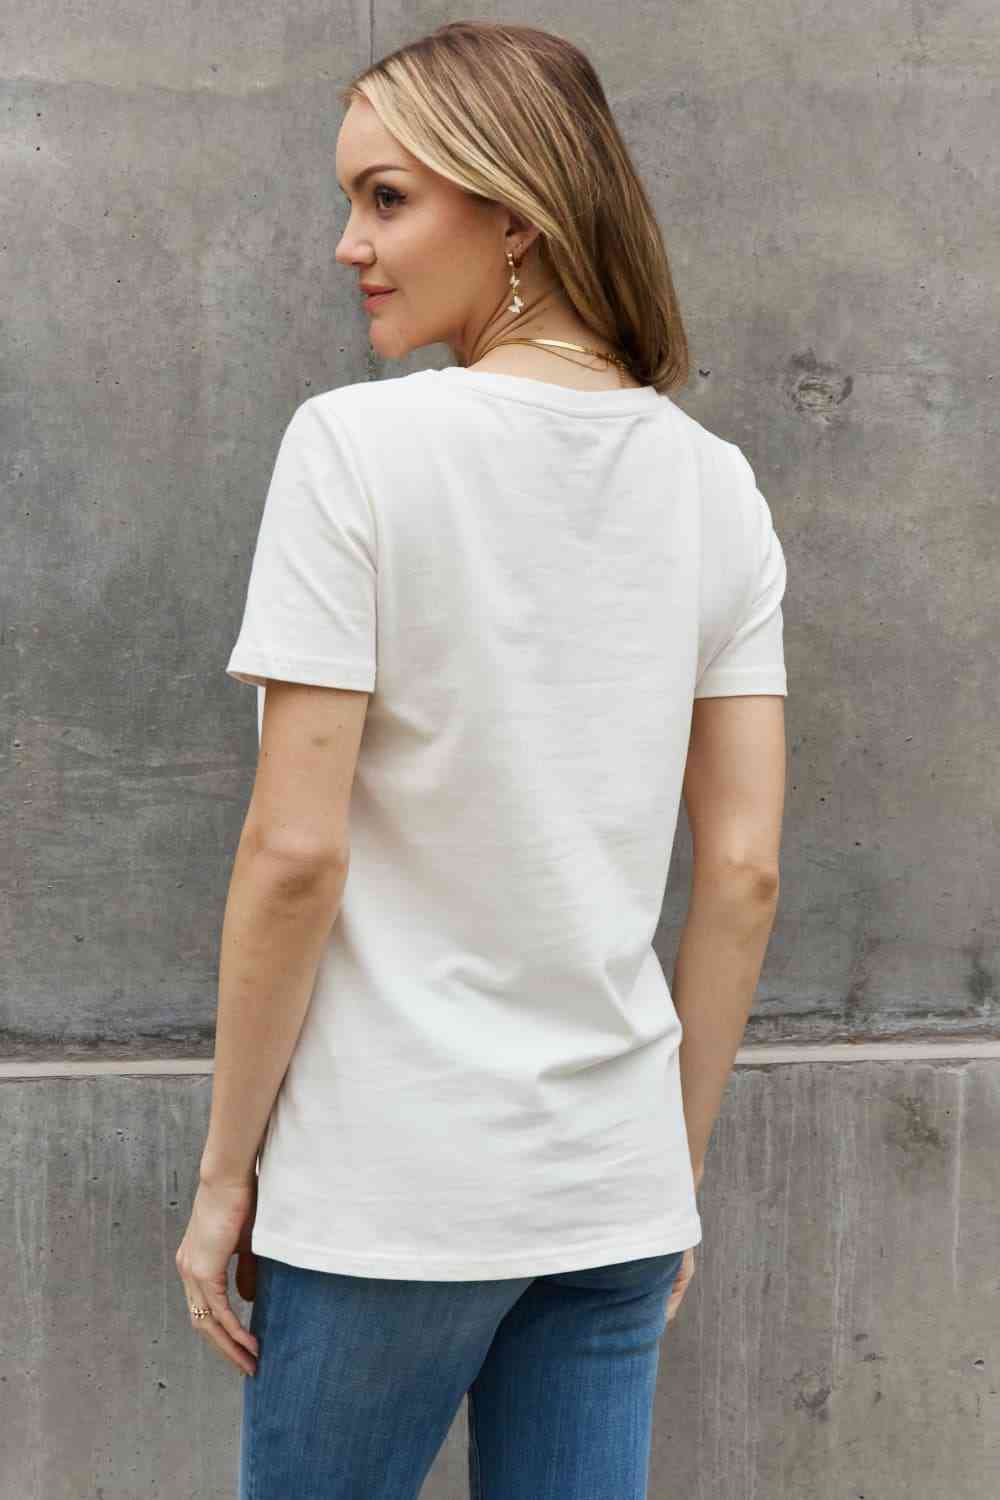 Camiseta de algodón con estampado HELLO SUNSHINE de tamaño completo de Simply Love